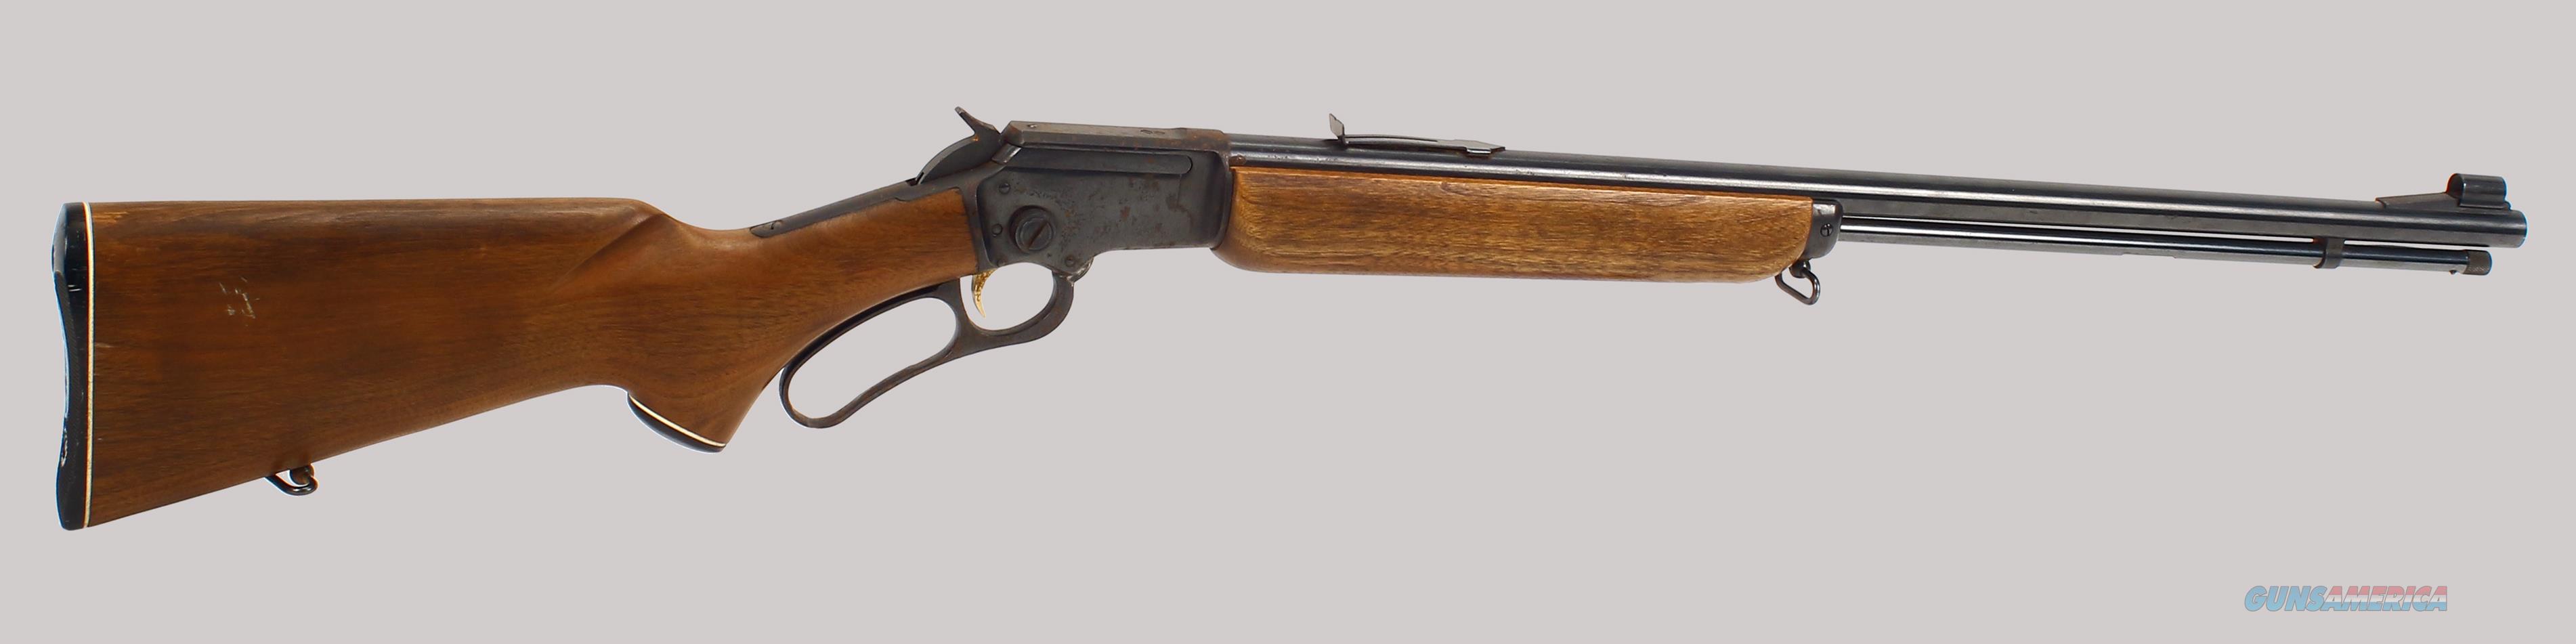 Marlin Model 39a 22lr Cal Rifle For Sale